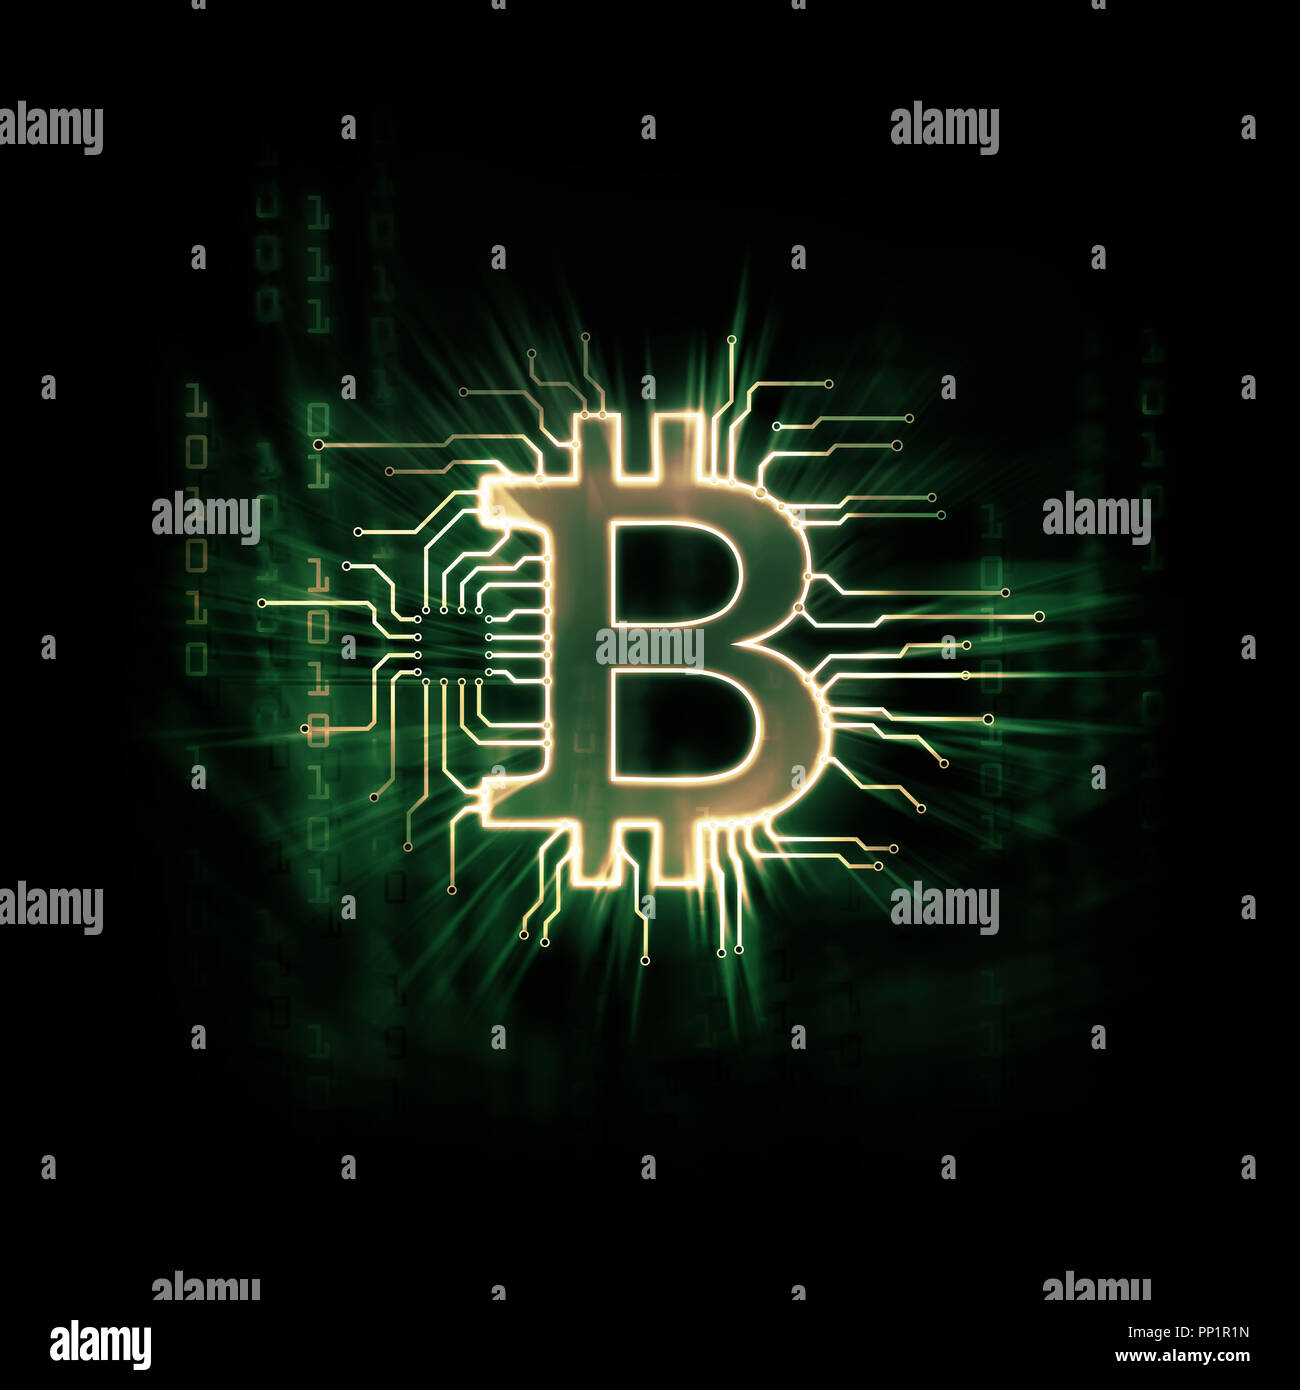 Leuchtenden grünen Bitcoin ₿ cryptocurrency, digitale dezentrale Währungssymbol, konzeptionelle Darstellung eines Bitcoin zu einem blockchain Netzwerk verbunden Stockfoto